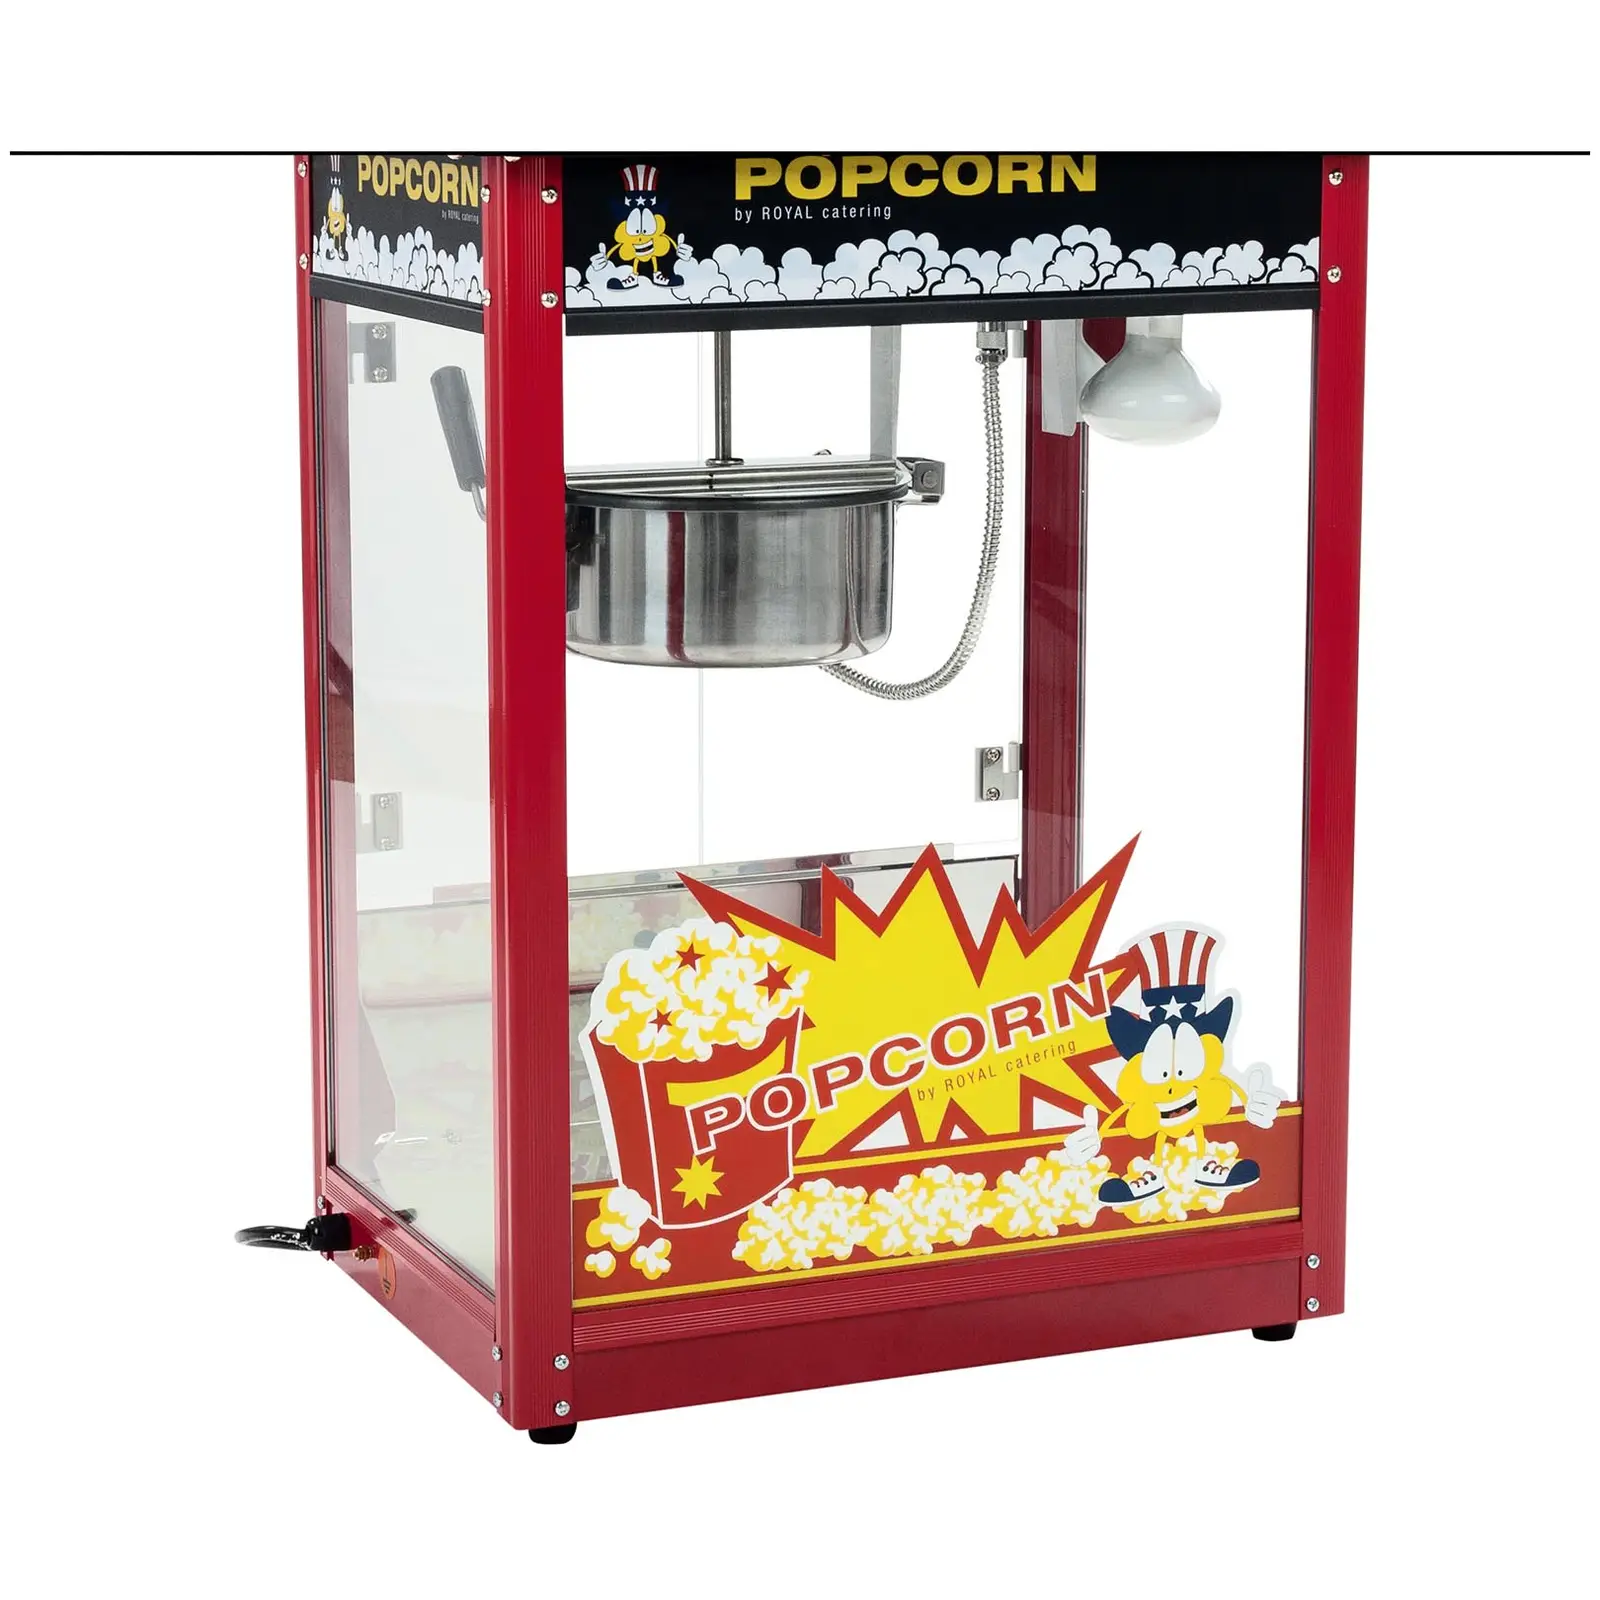 Popcornmaschine mit Wagen - rot